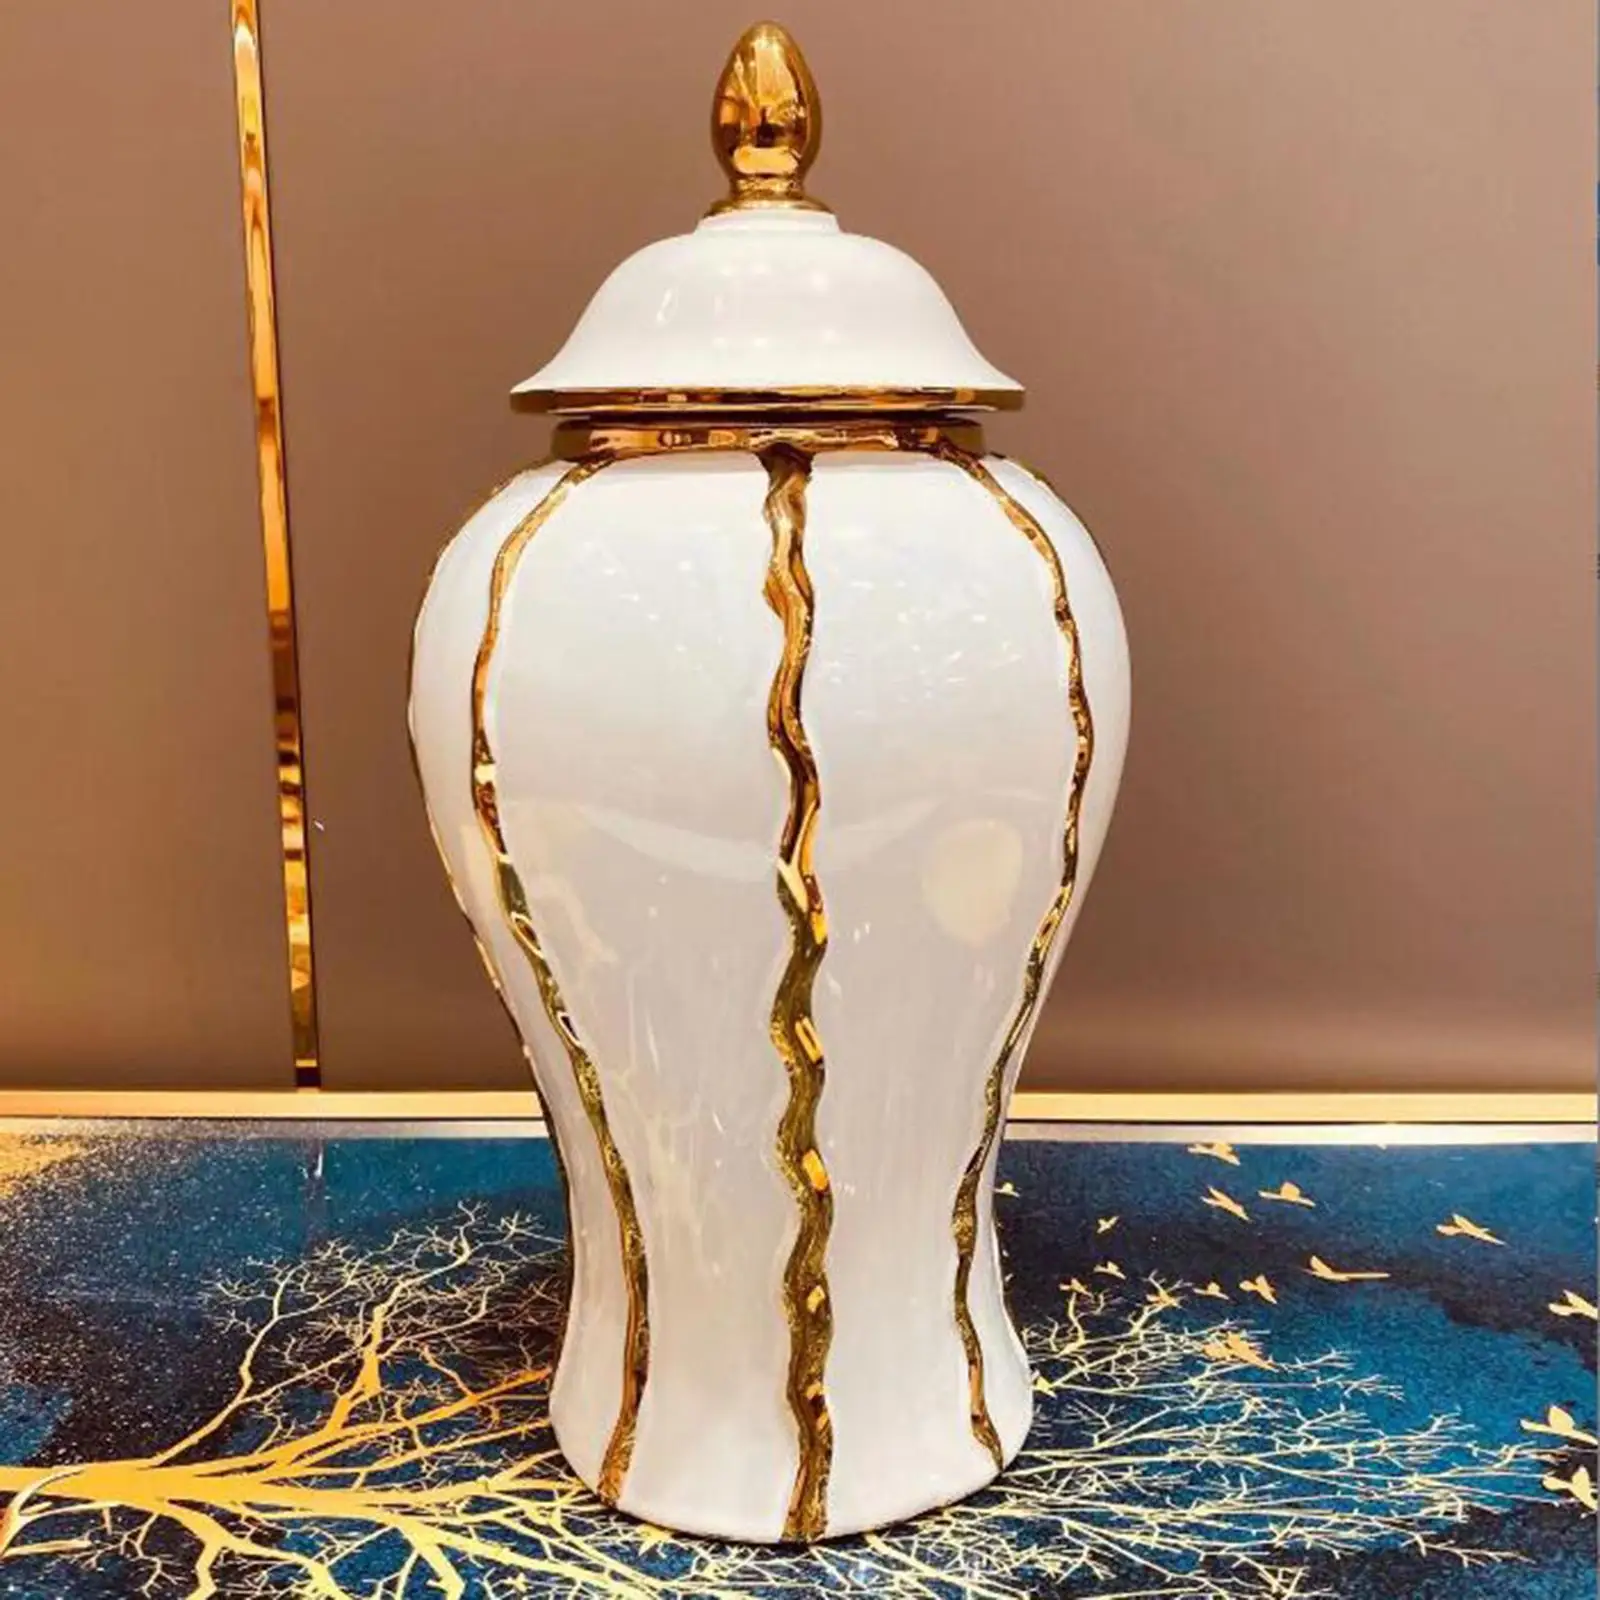 Ceramic Vase Chinese Style Porcelain Decorative Display Porcelain Ginger Jar for Bedroom Floral Arrangement Livingroom Office